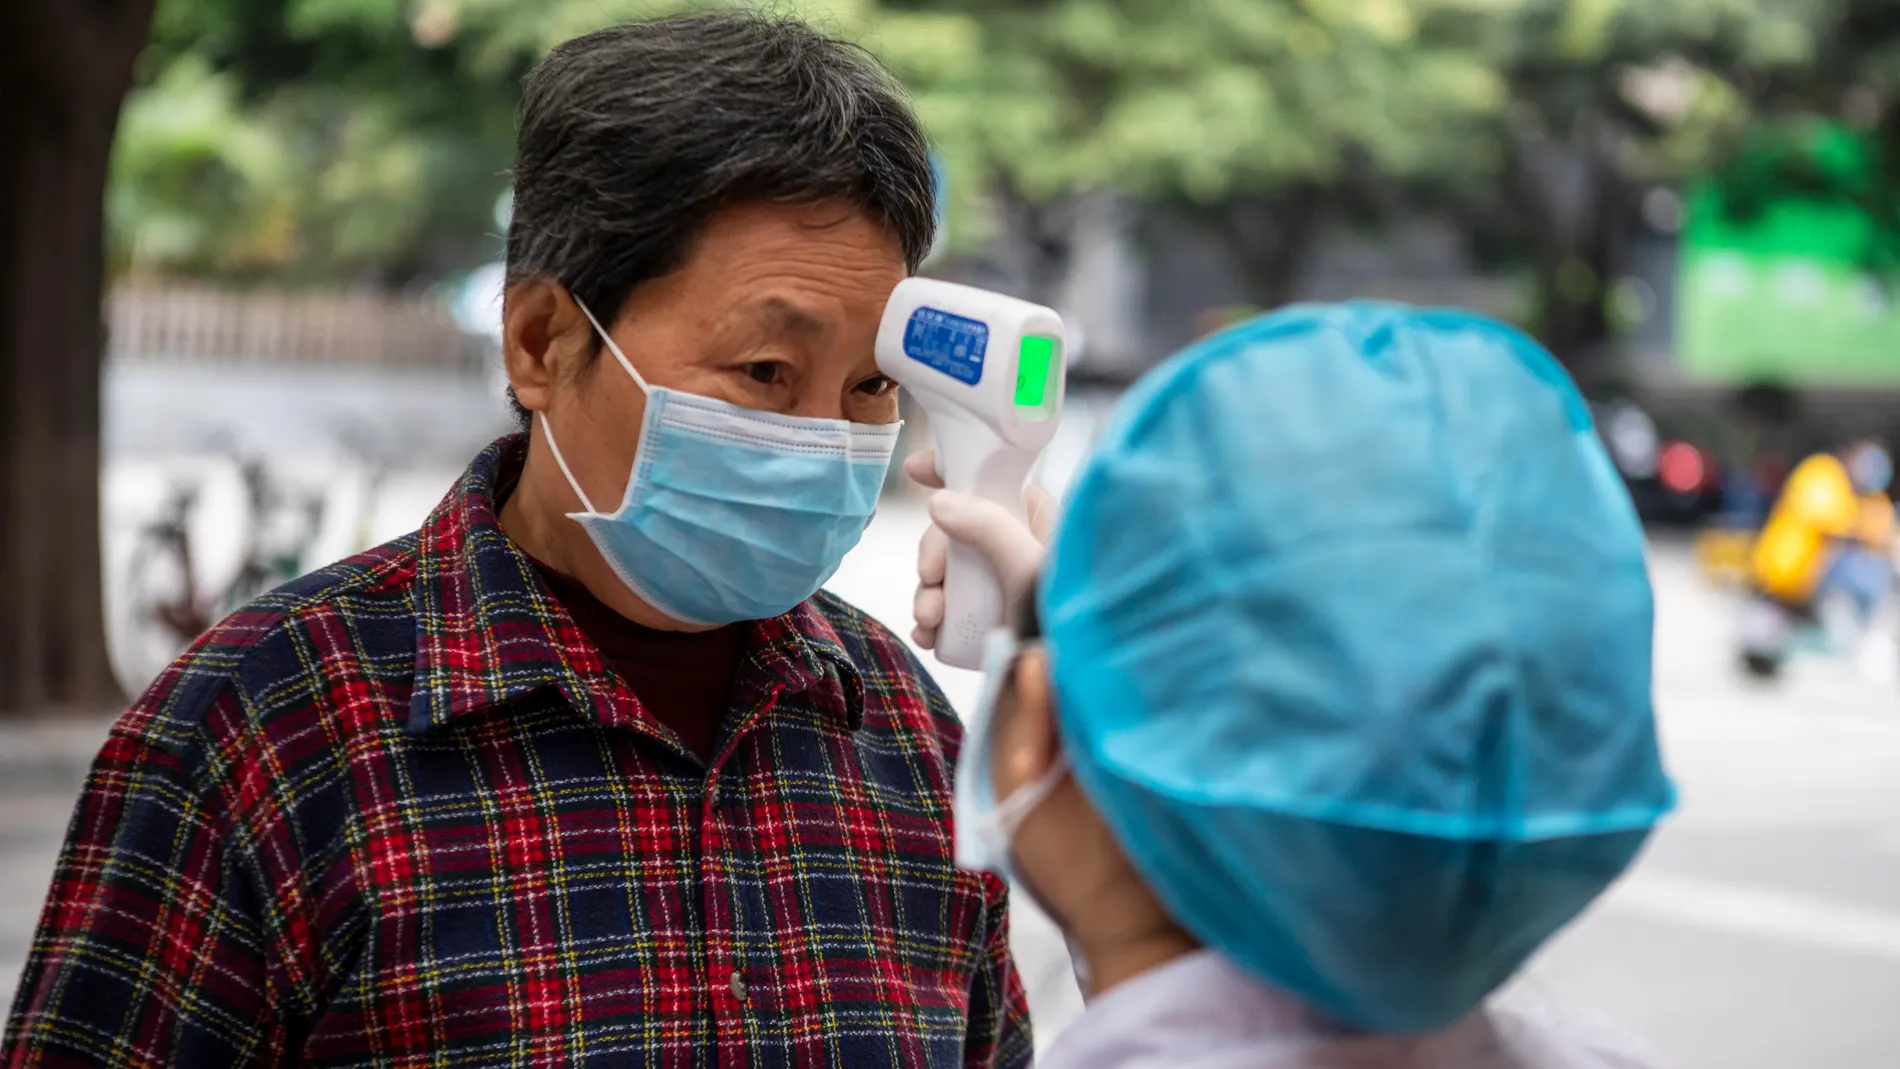 Coronavirus prevention efforts in China